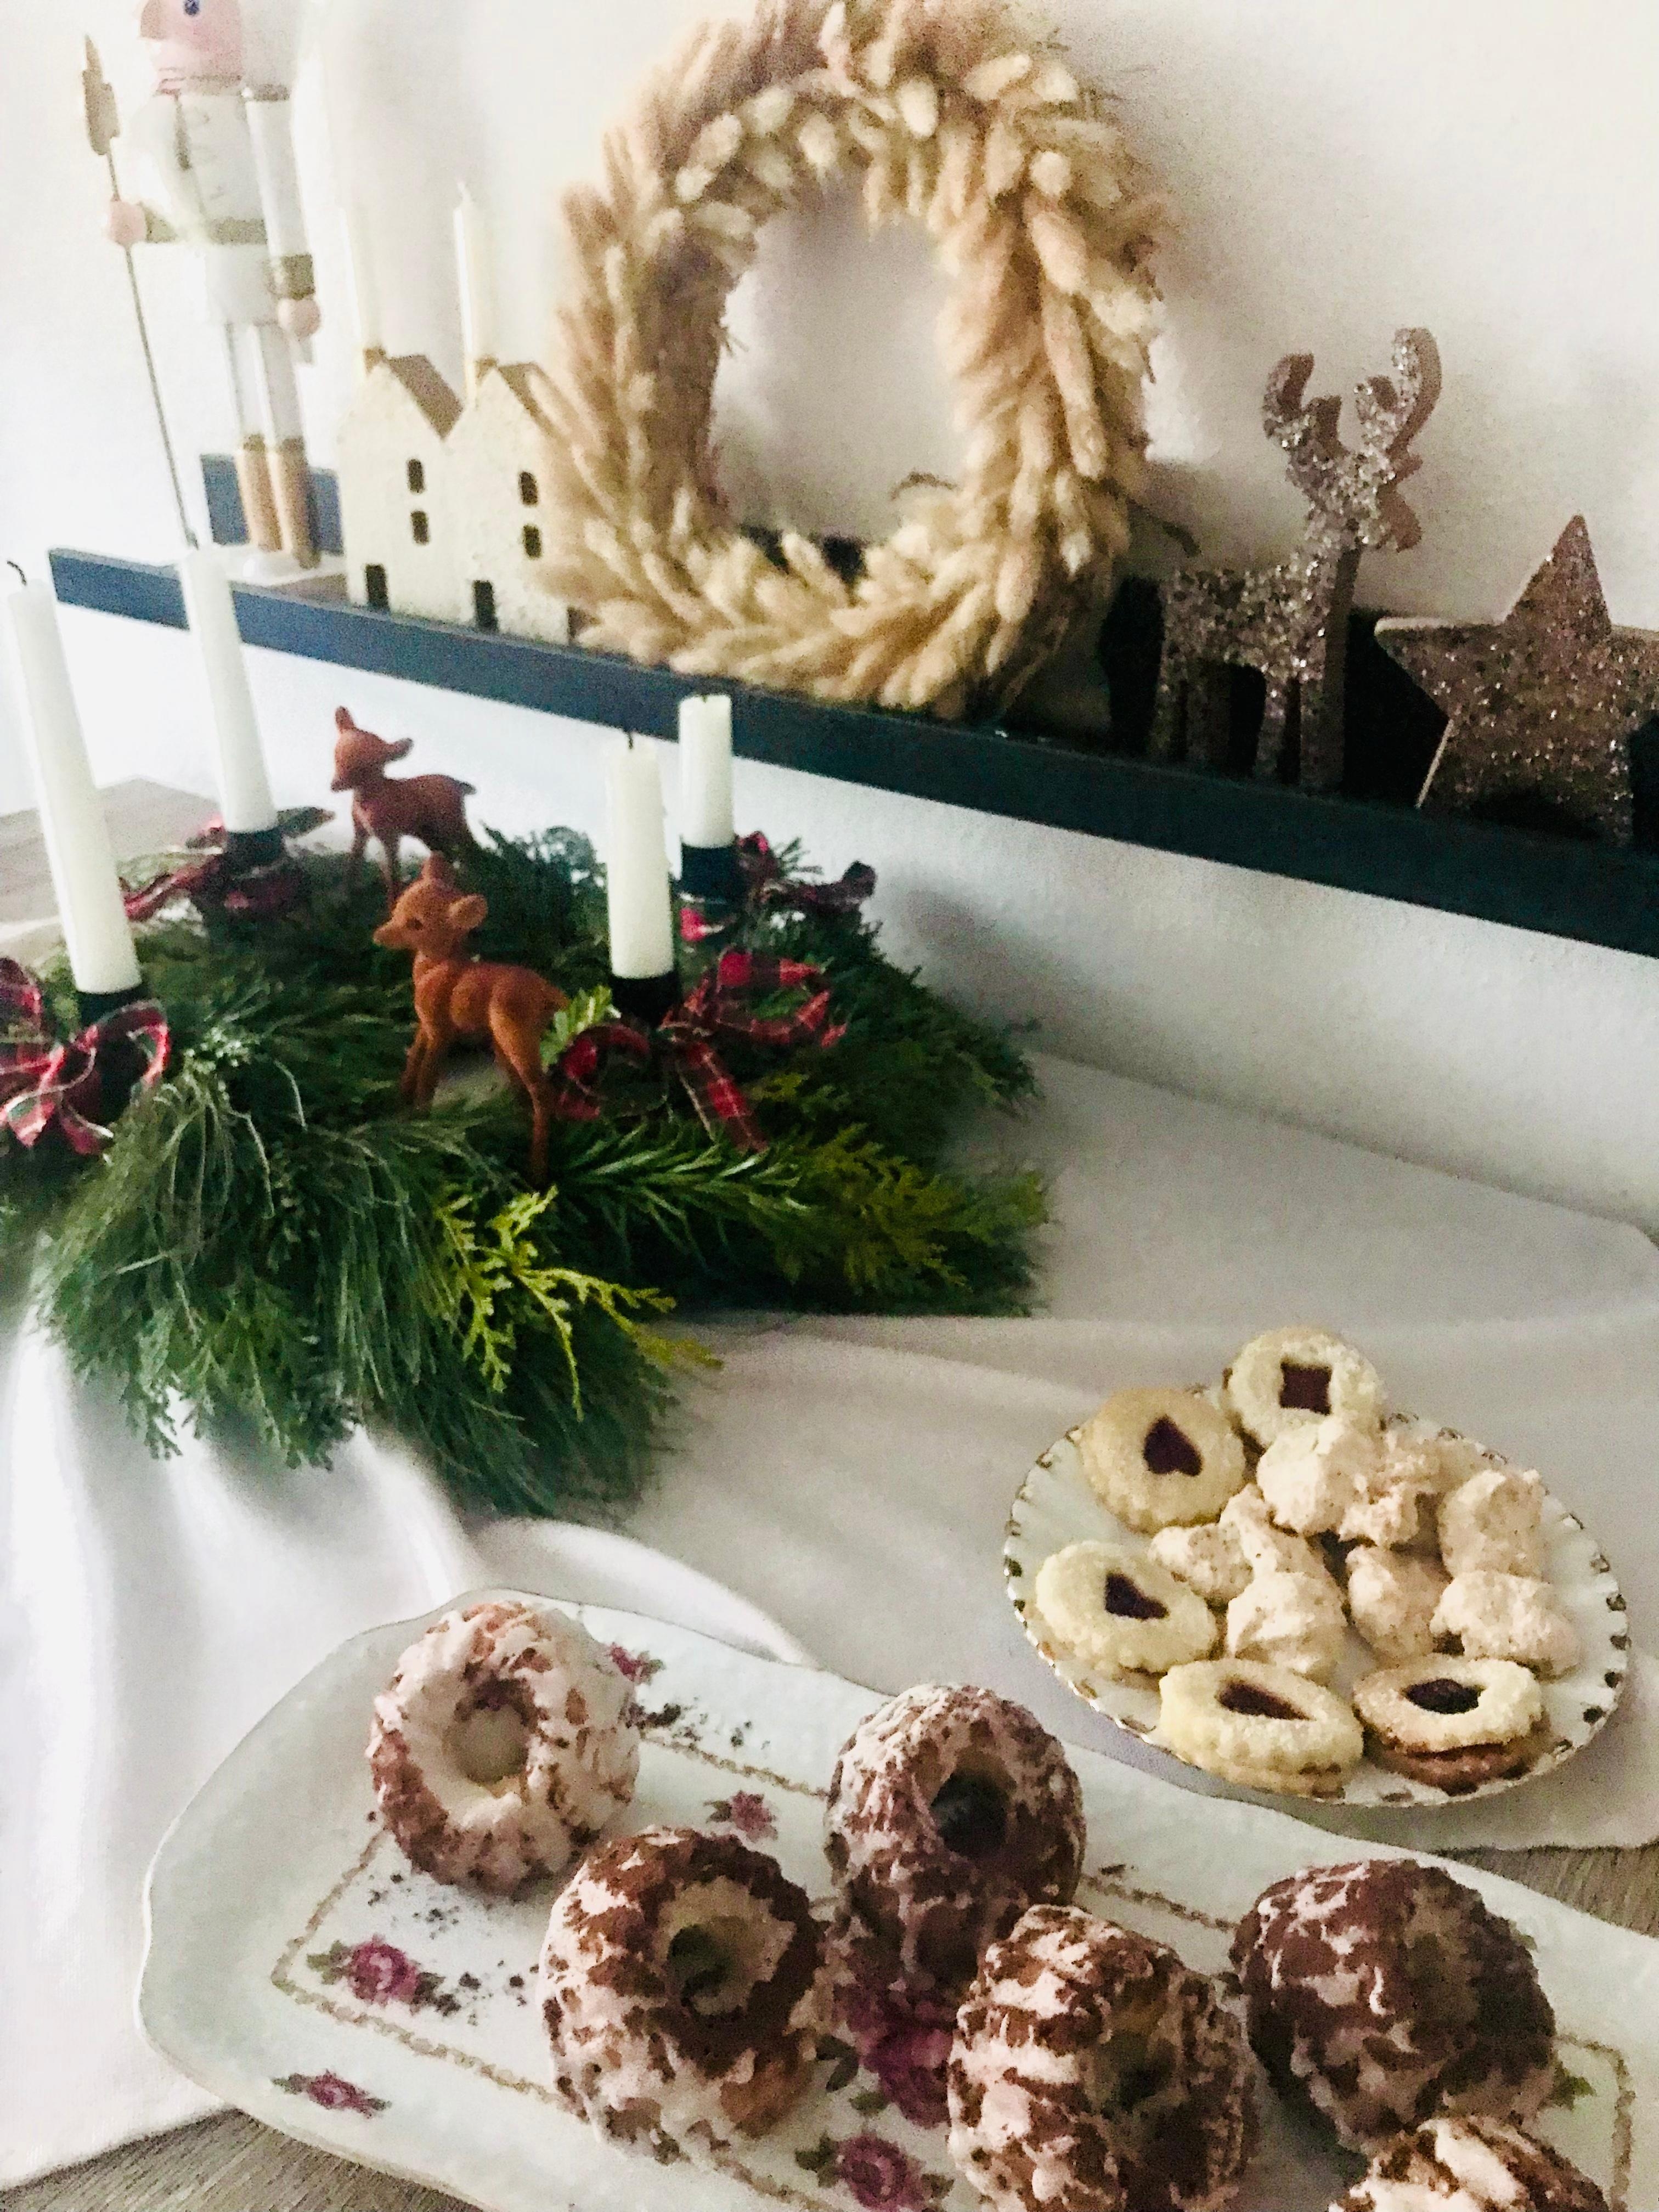 2. Weihnachtsfeiertag Zeit für  Café und Kuchen 💫💫
#esstisch #weihnachtlich #kranz #plätzchen #diy #cozy #xmas 
